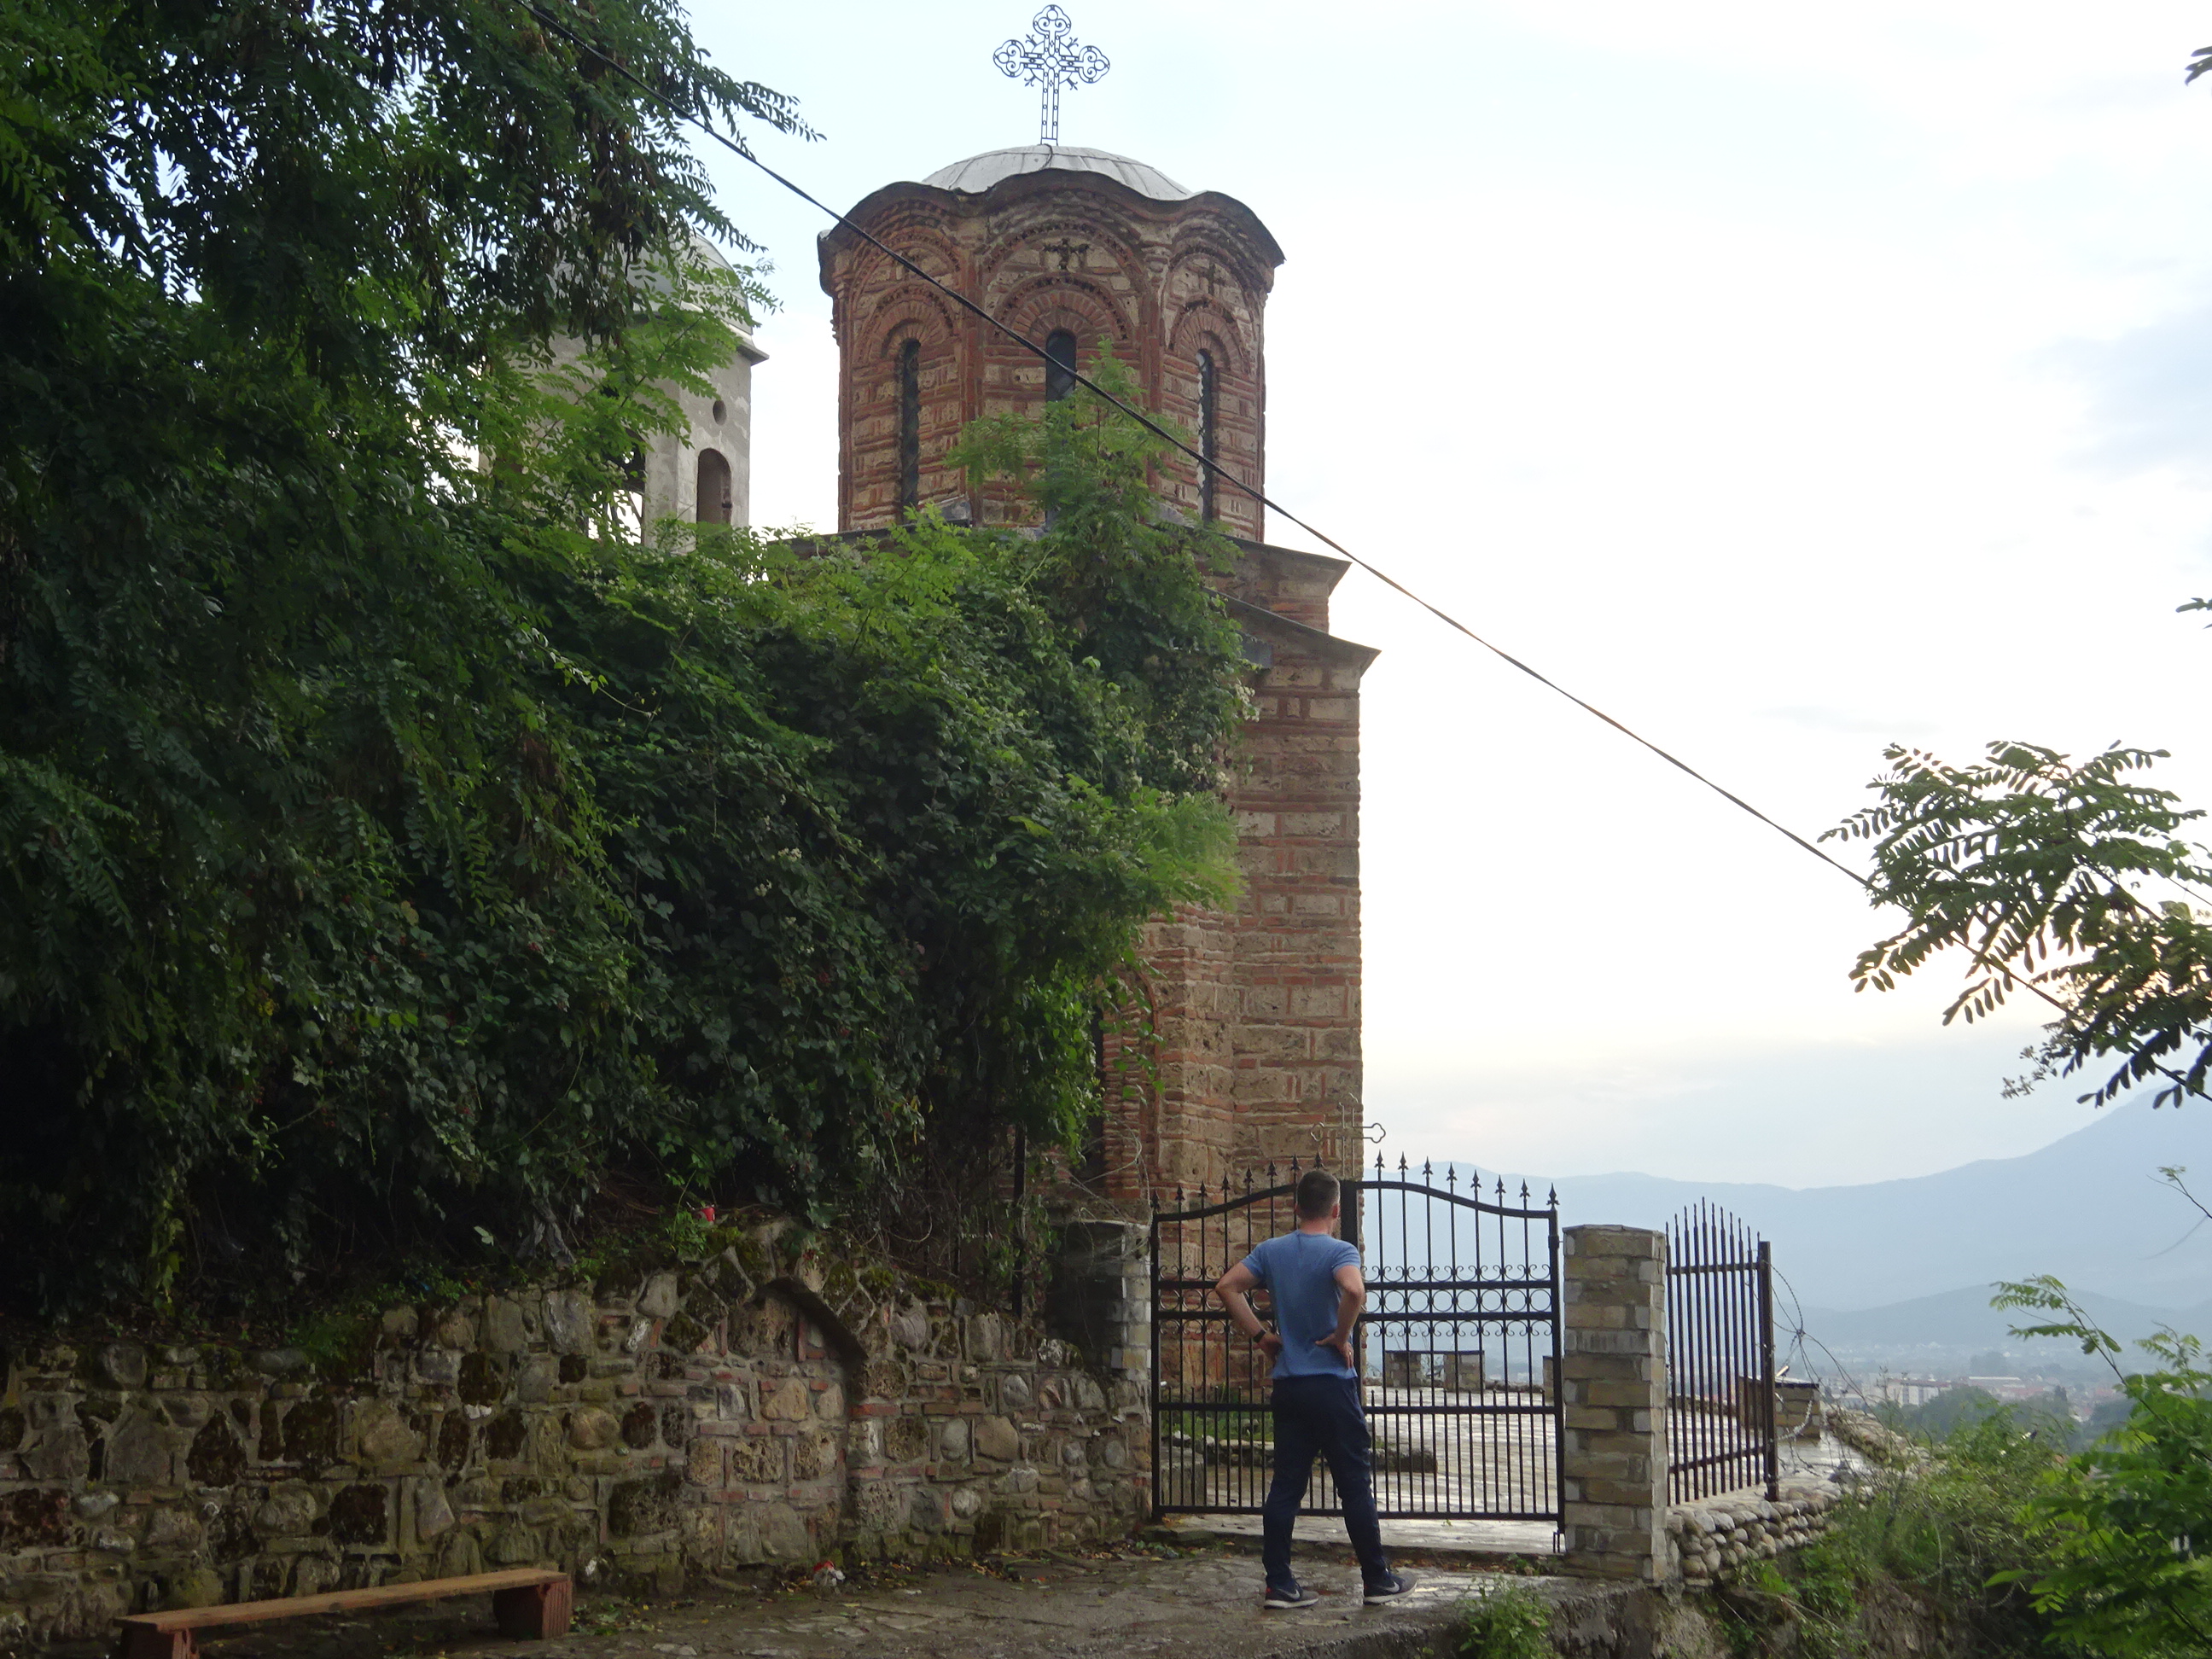 プリズレンの観光で見た「プリズレン要塞」に行く途中の教会